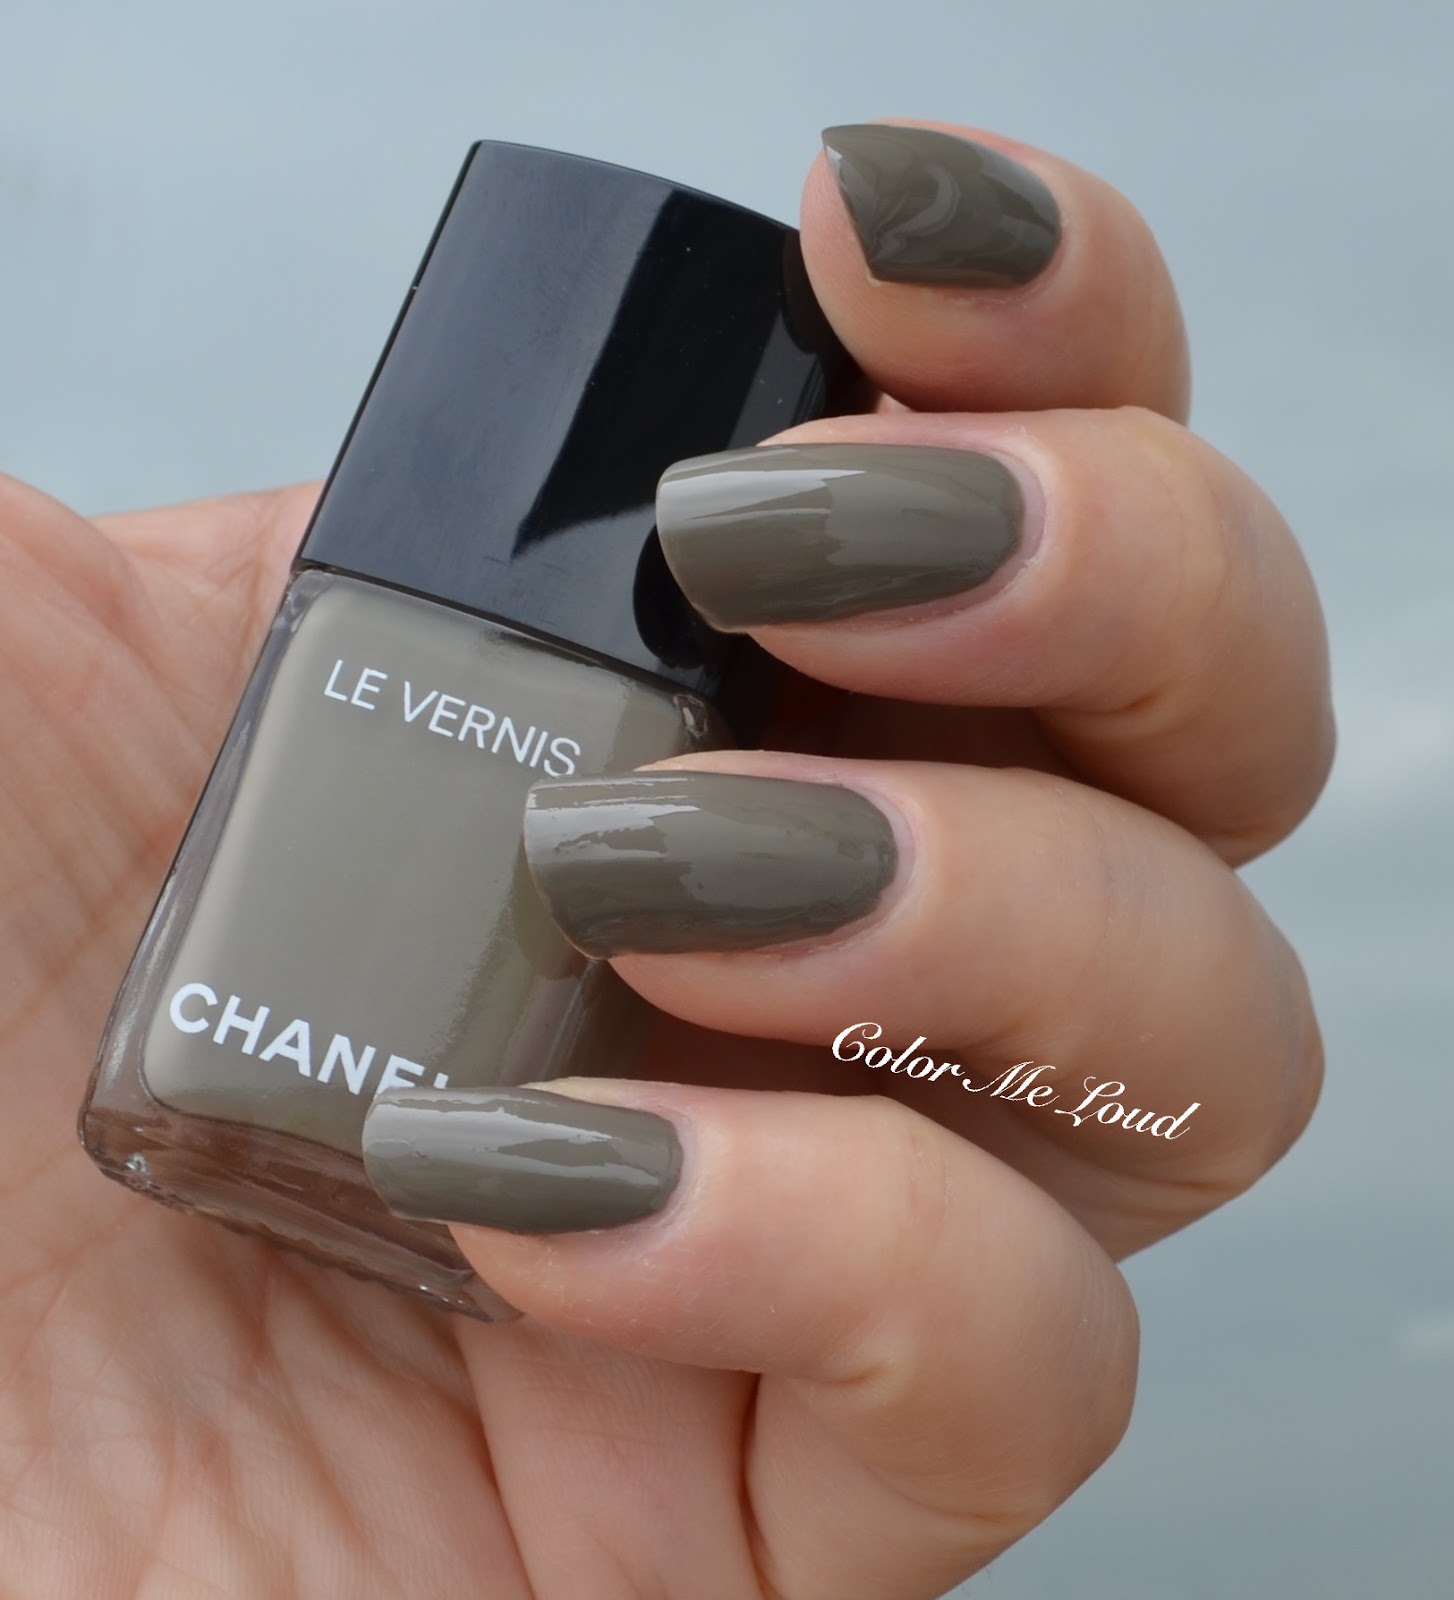 Chanel Le Vernis Longwear Nail Colour, Nudes & Vamps, Review